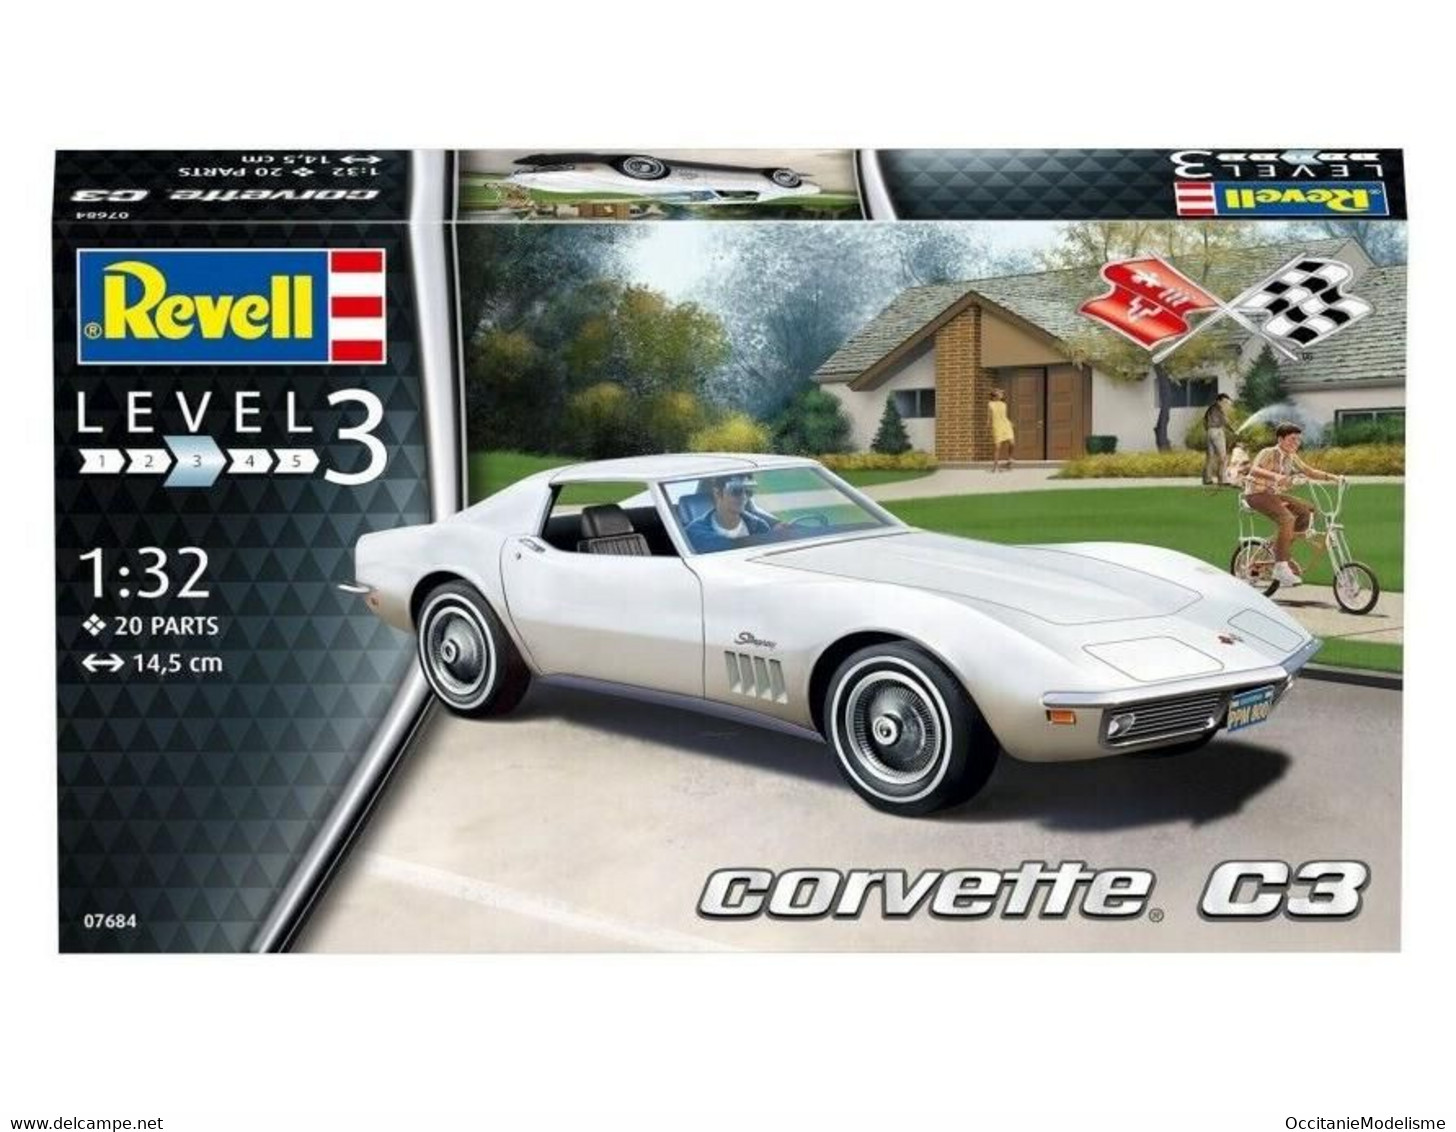 Revell - CHEVROLET CORVETTE C3 Maquette Kit Plastique 07684 Neuf NBO 1/32 - Autos